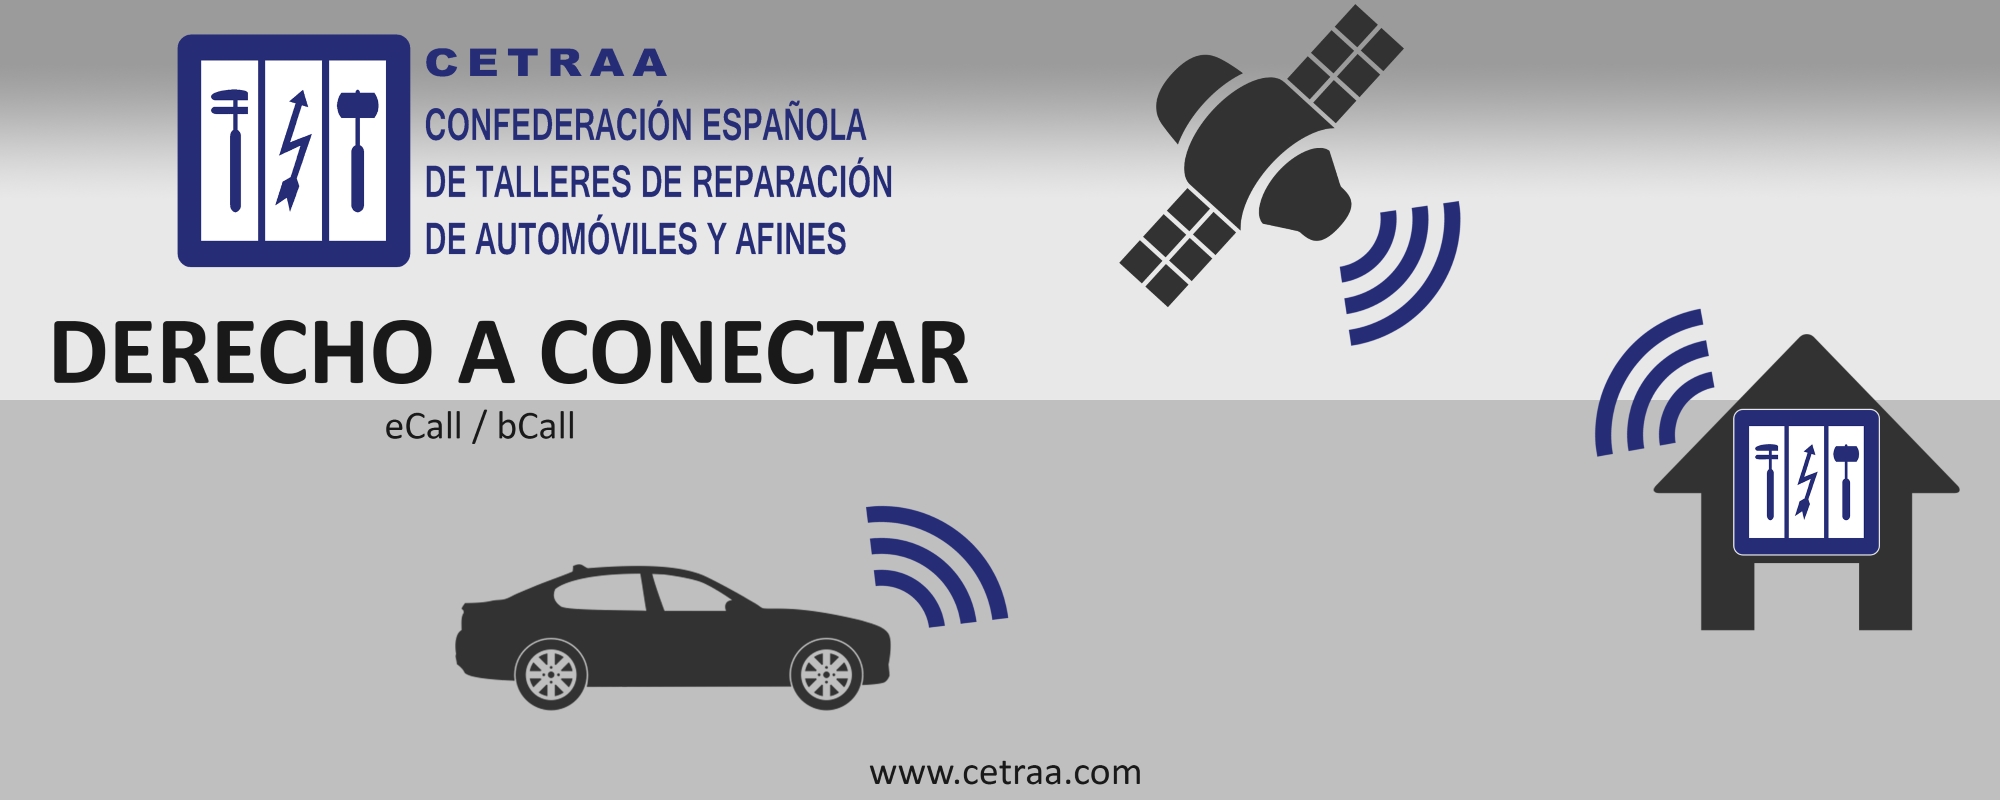 Informe CETRAA 2015 - Derecho a conectar